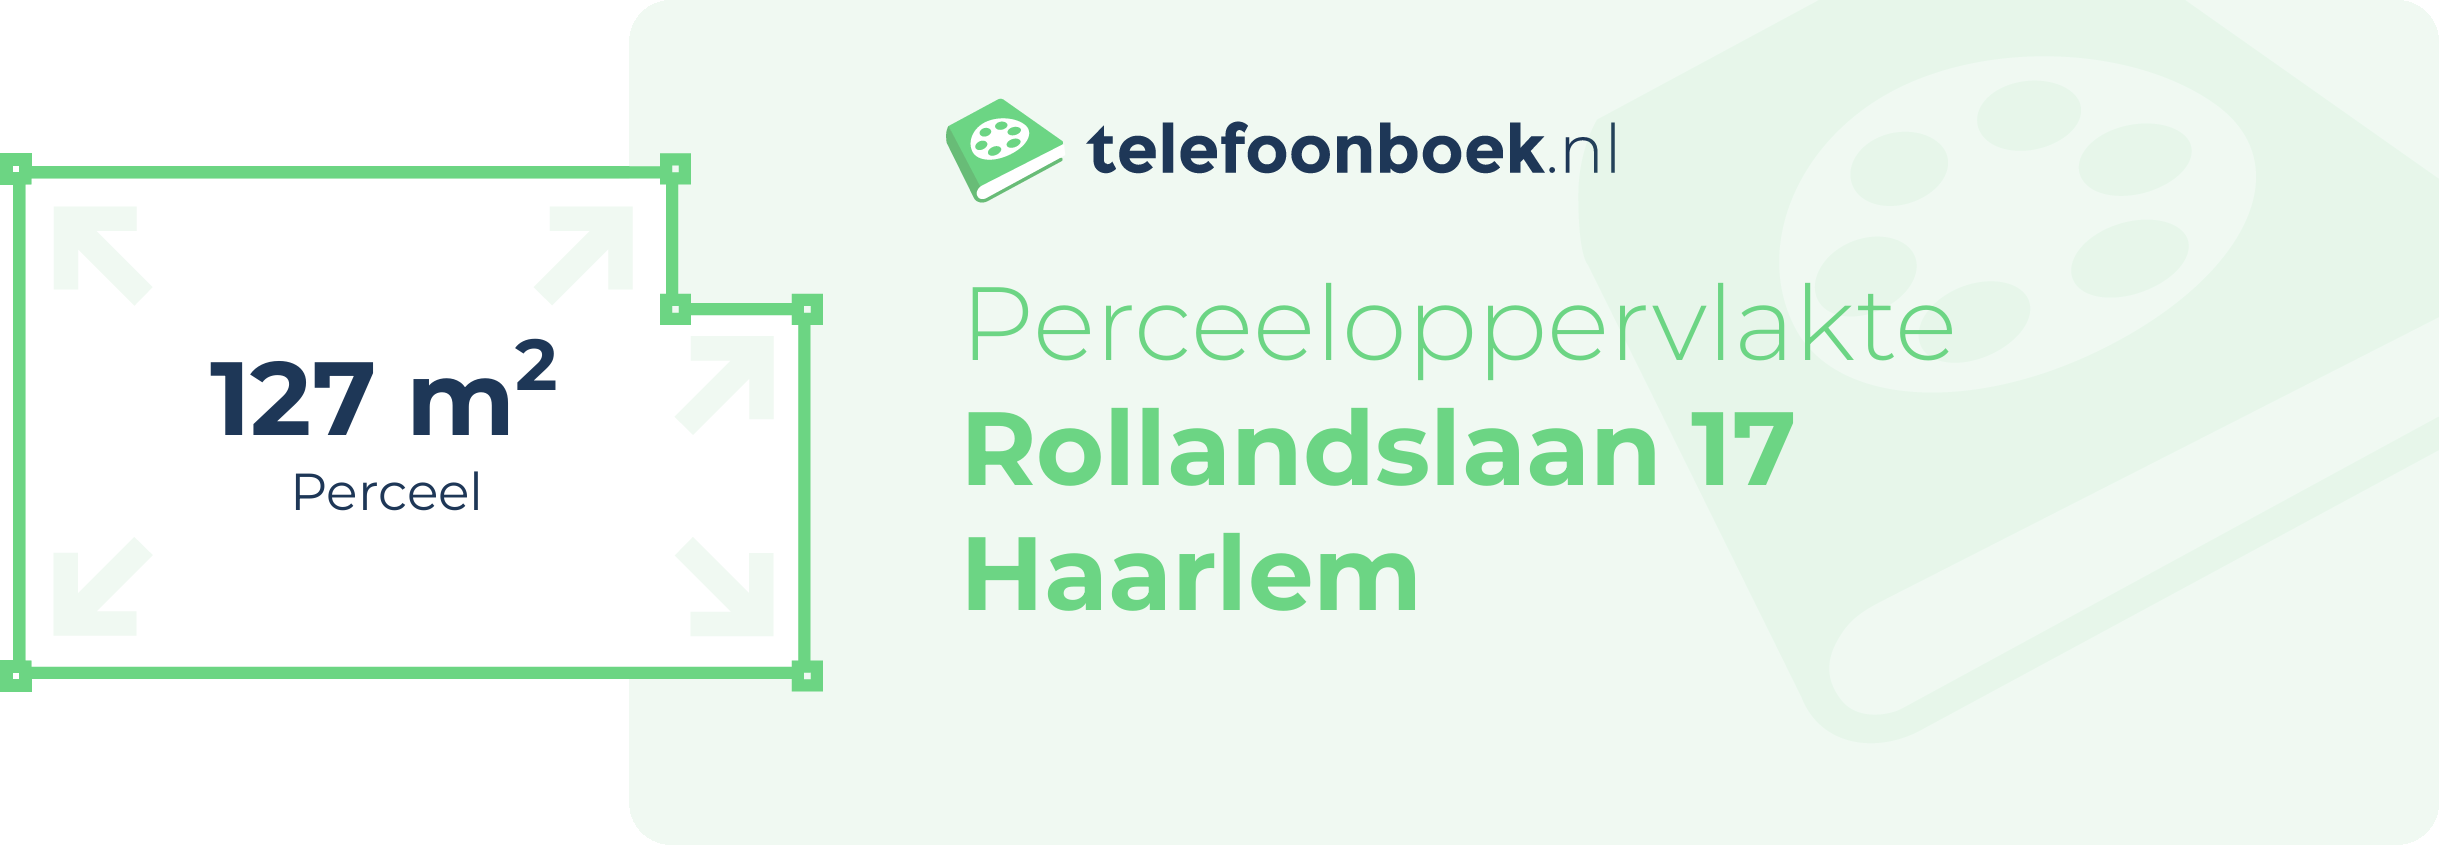 Perceeloppervlakte Rollandslaan 17 Haarlem